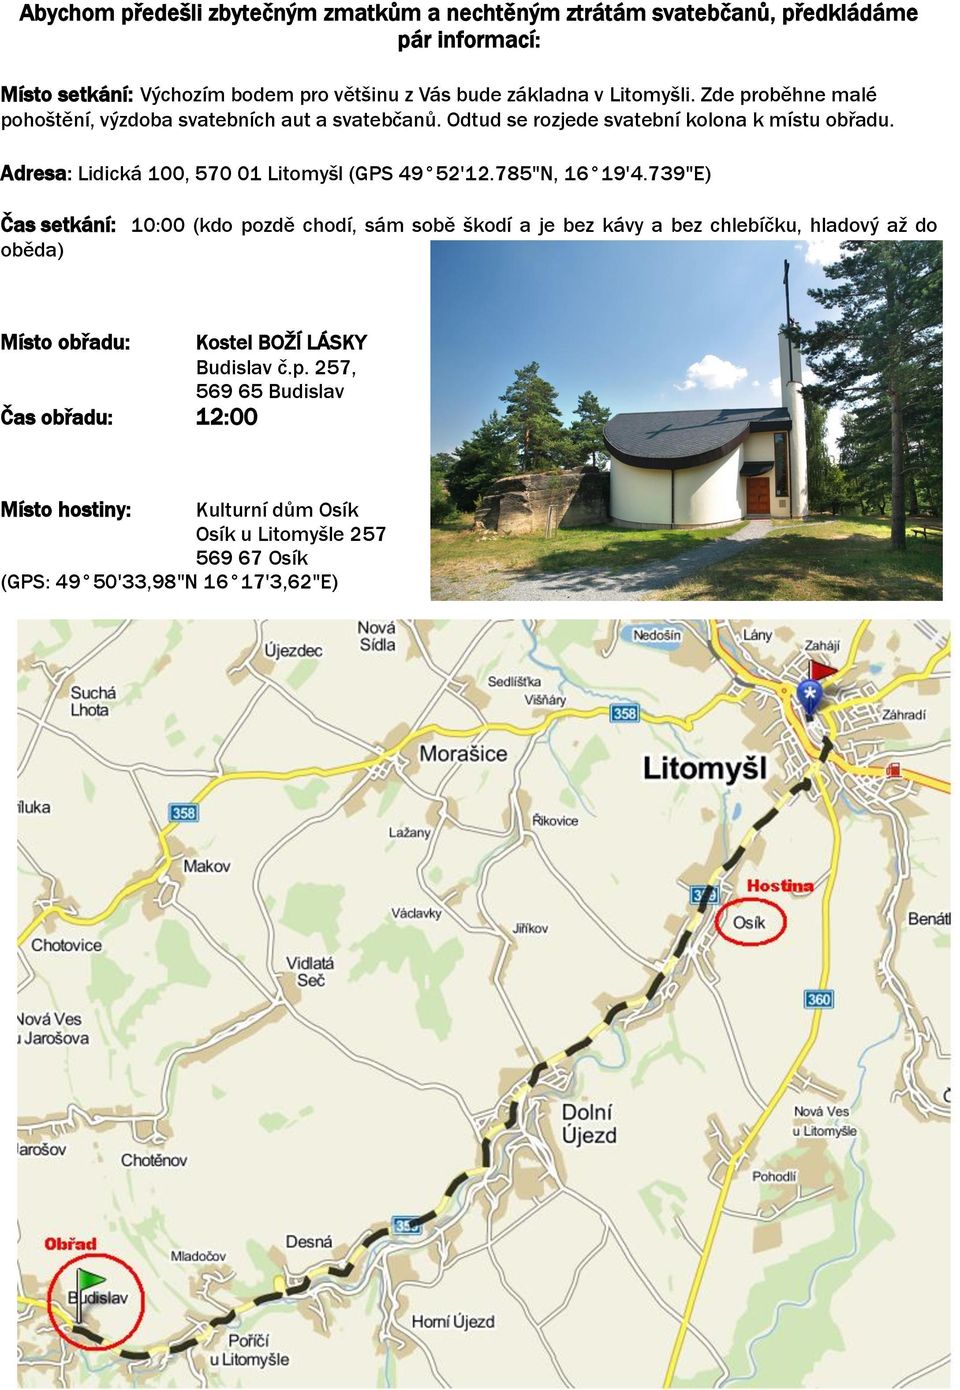 Adresa: Lidická 100, 570 01 Litomyšl (GPS 49 52'12.785"N, 16 19'4.